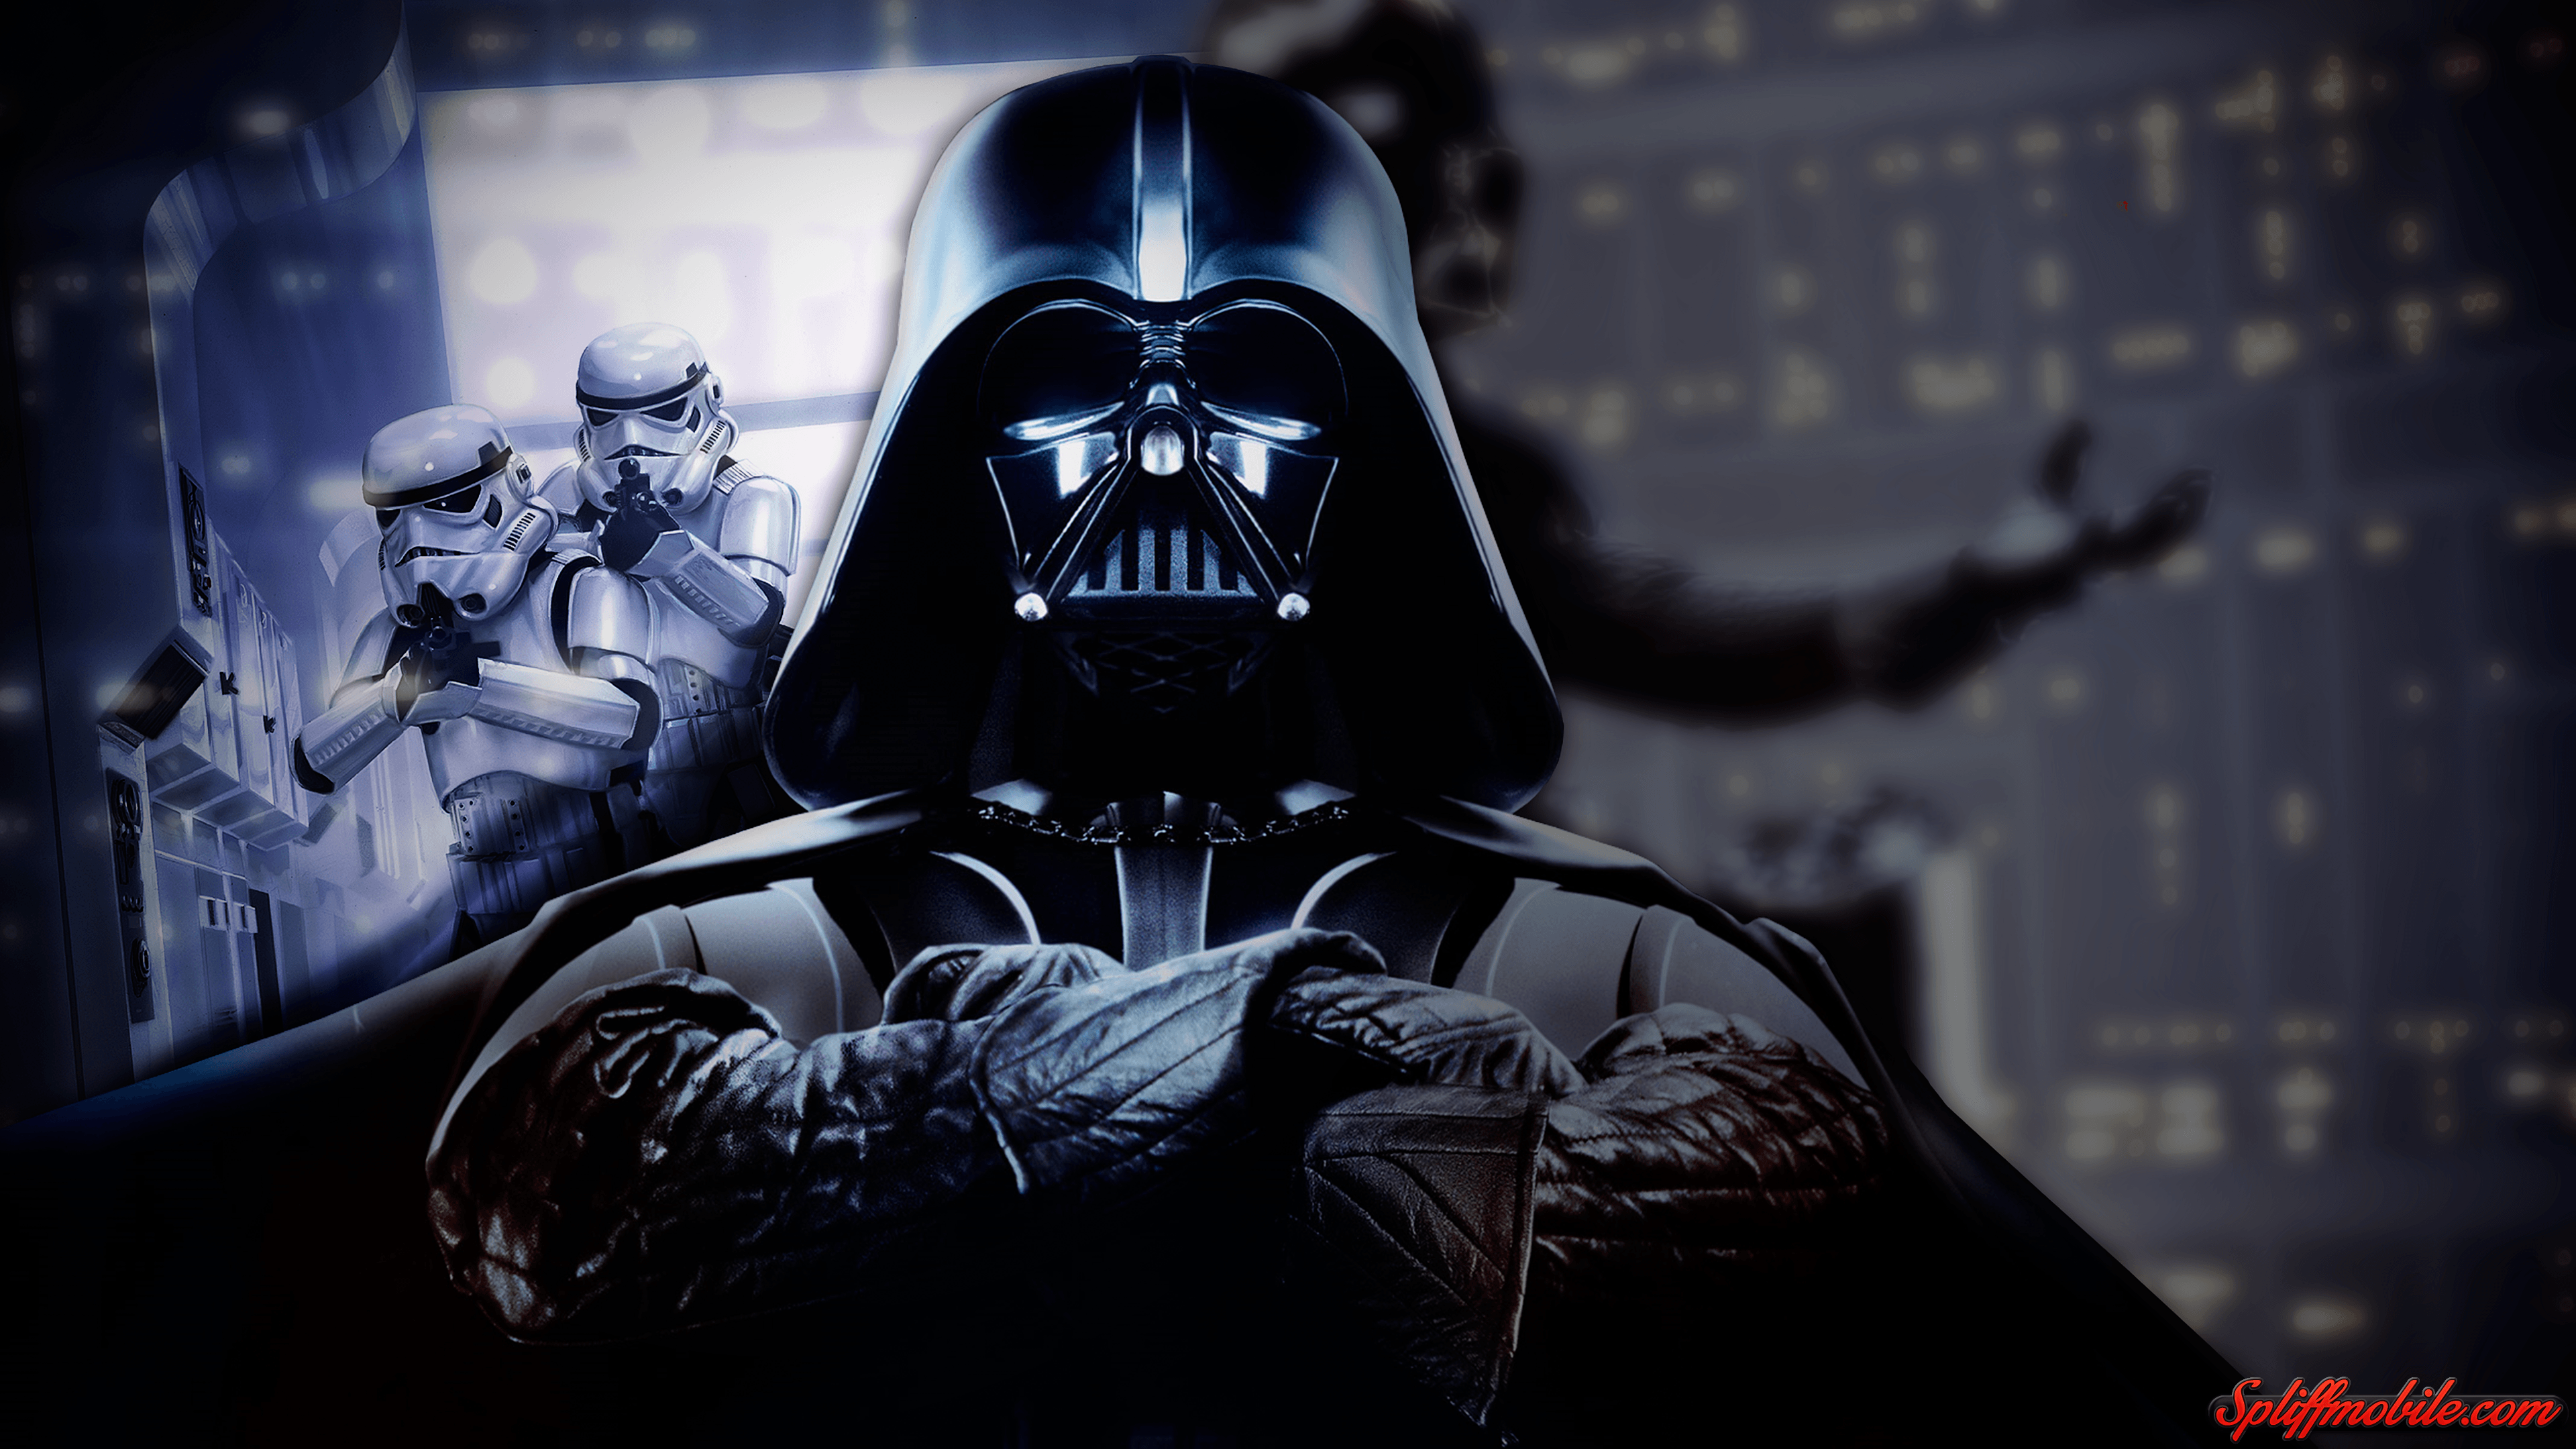 Star Wars Darth Vader Wallpaper. HD Wallpaper. Darth